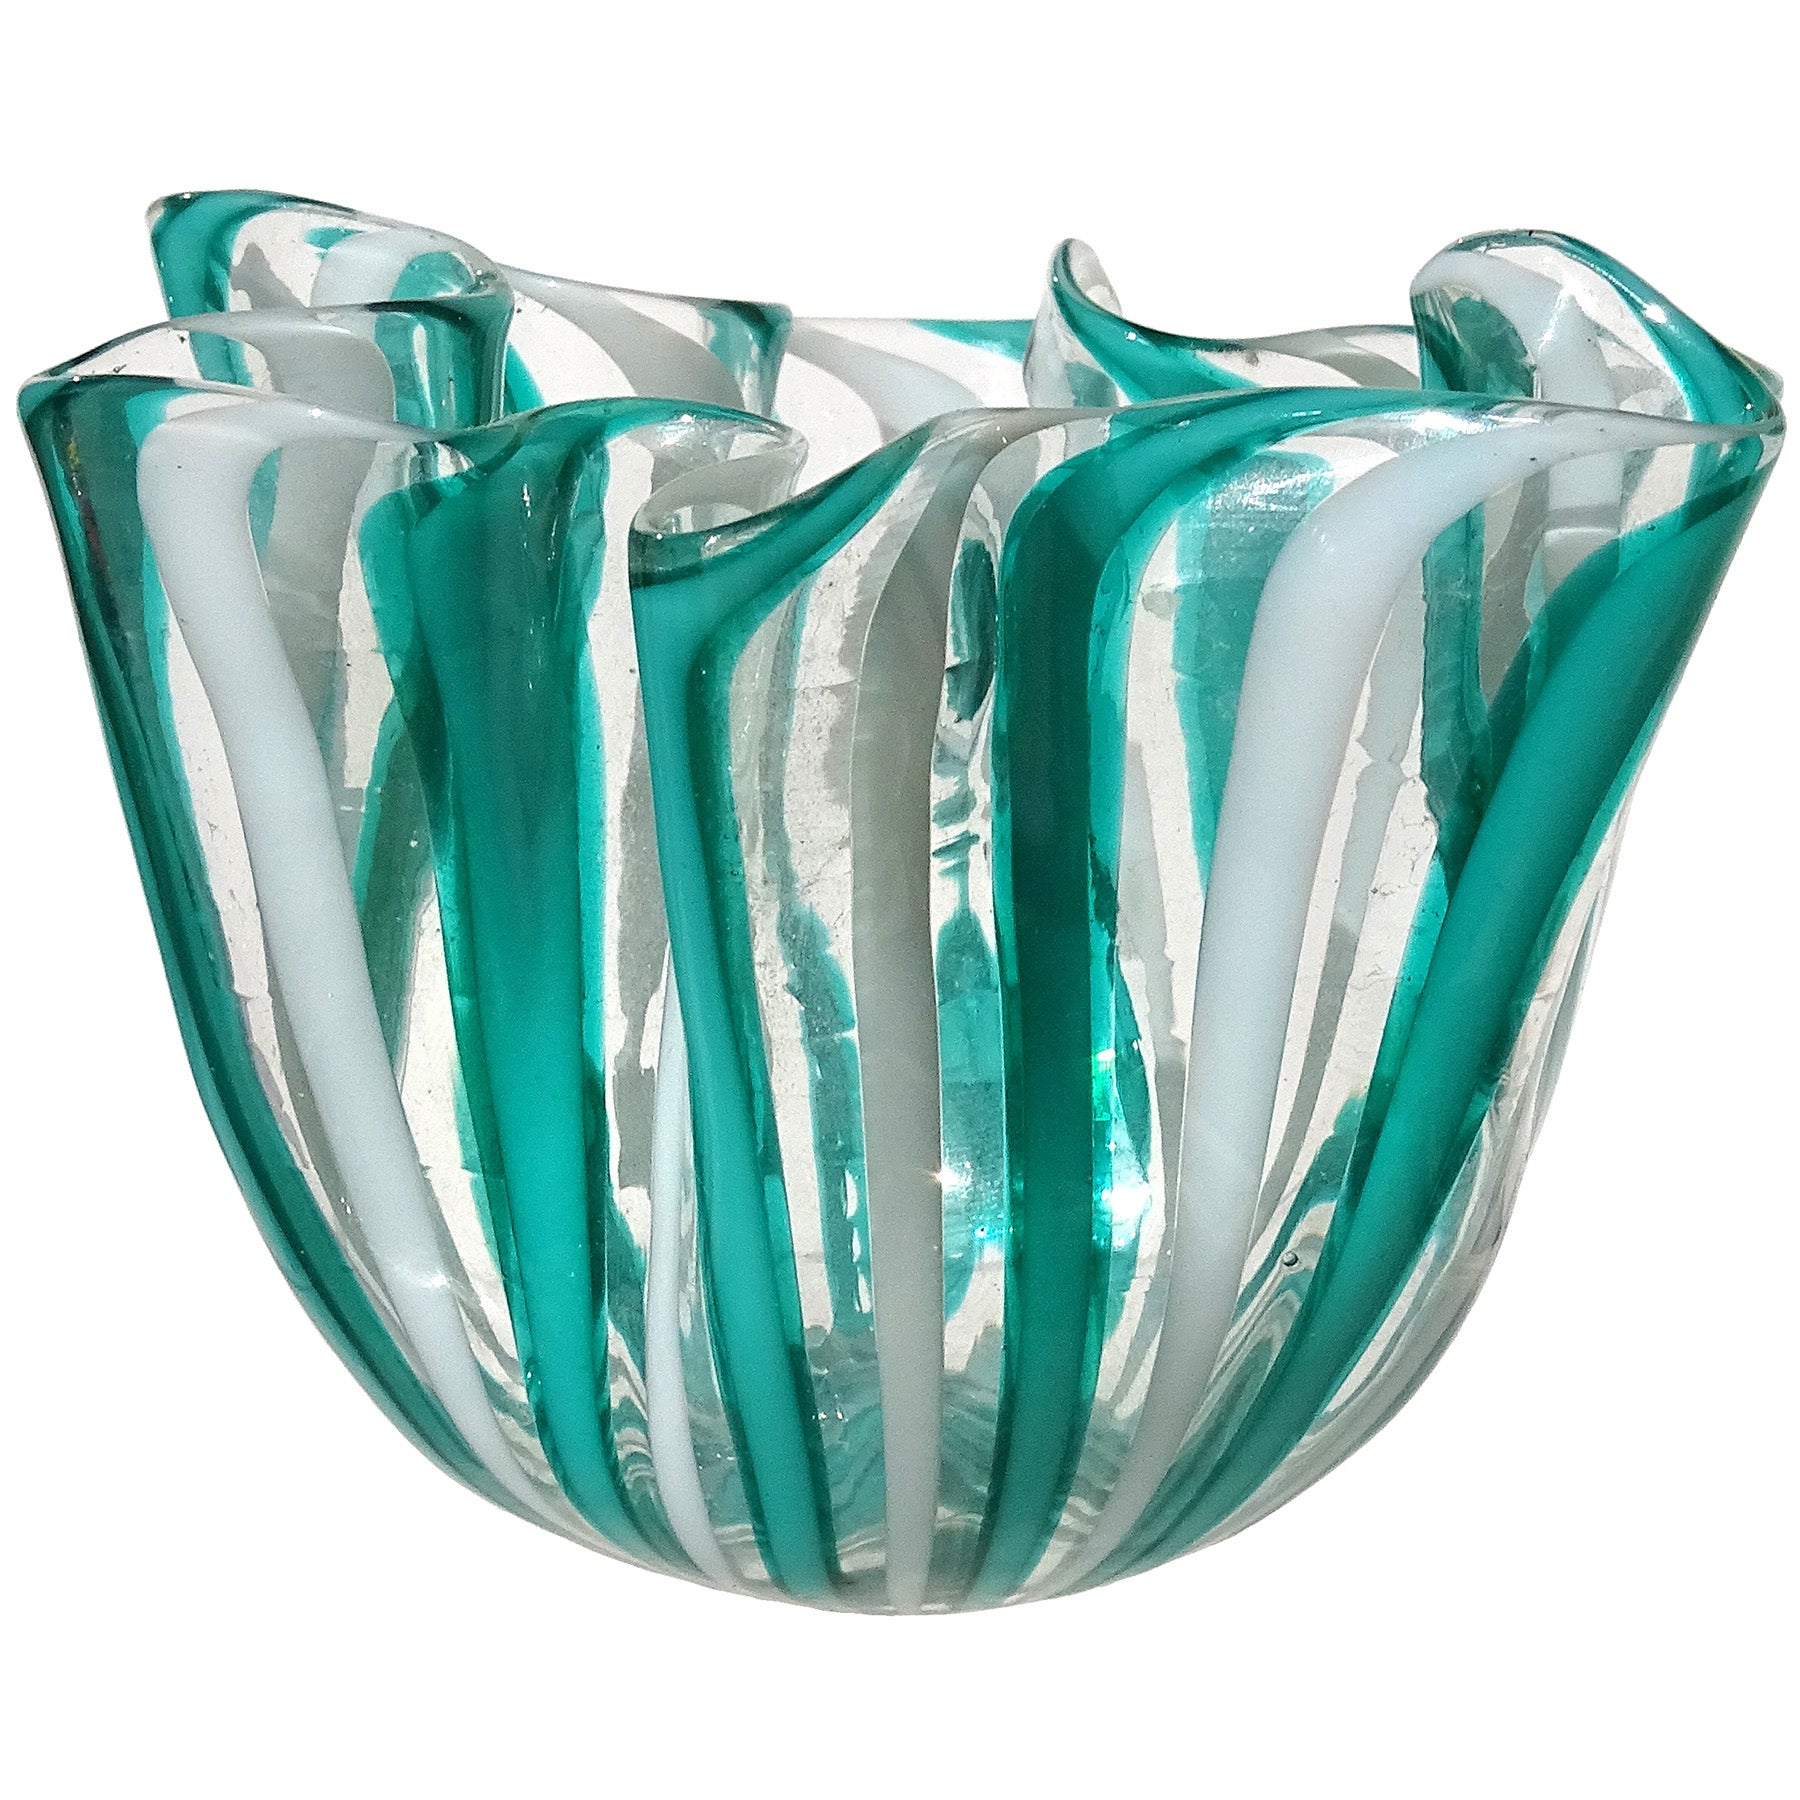 Venini Bianconi Murano Teal White Ribbons Italian Art Glass Fazzoletto Vase For Sale